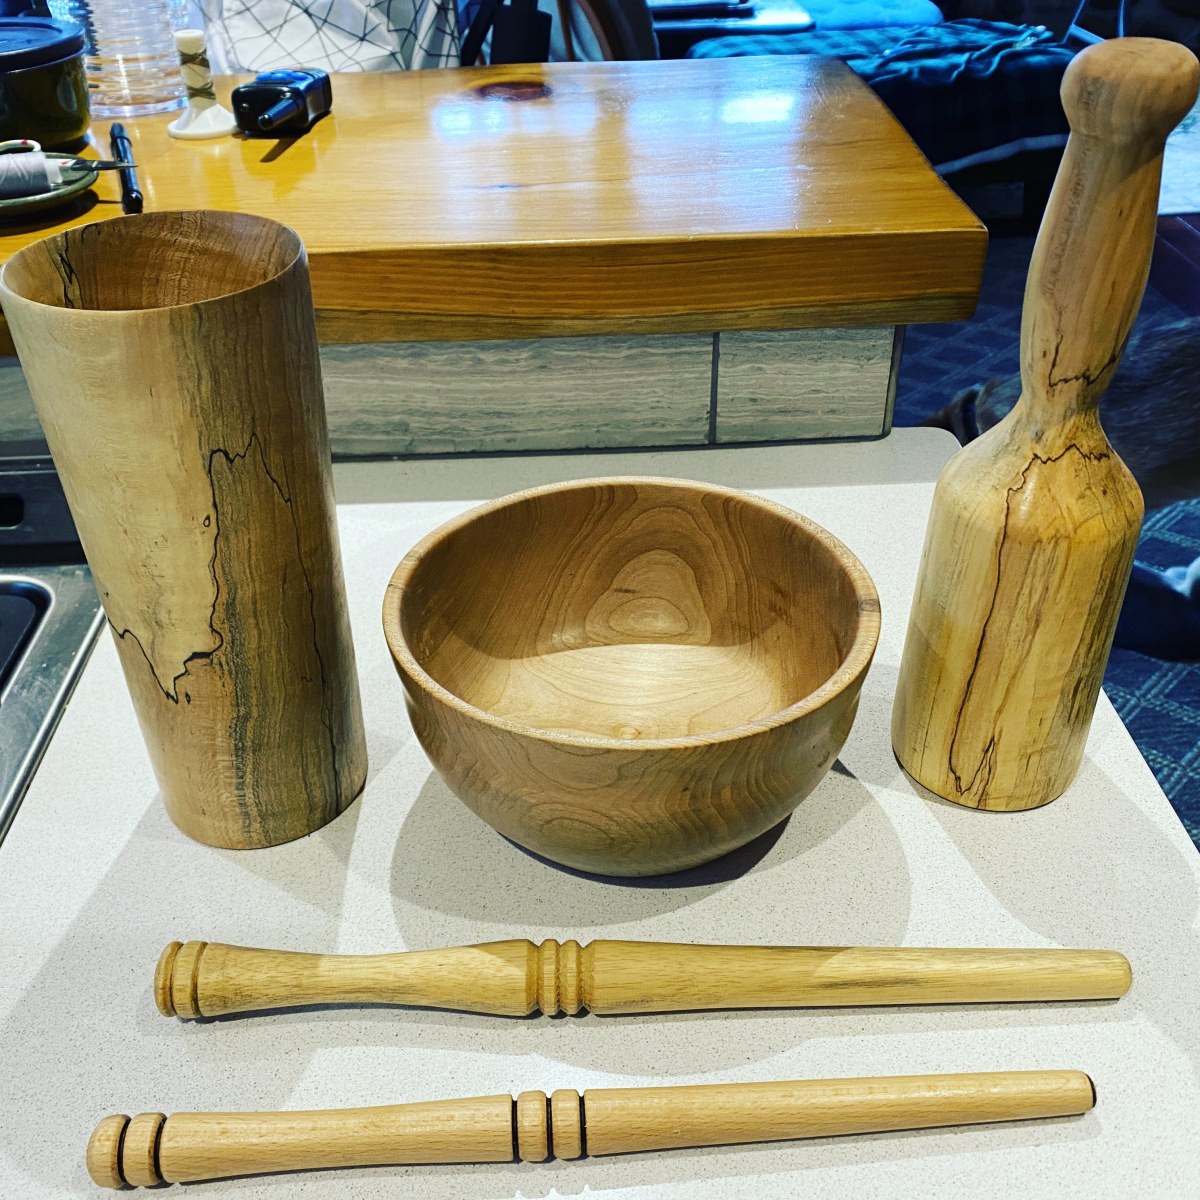 vase, bowl, mallet, nostrapinnes for winding yarn, maple